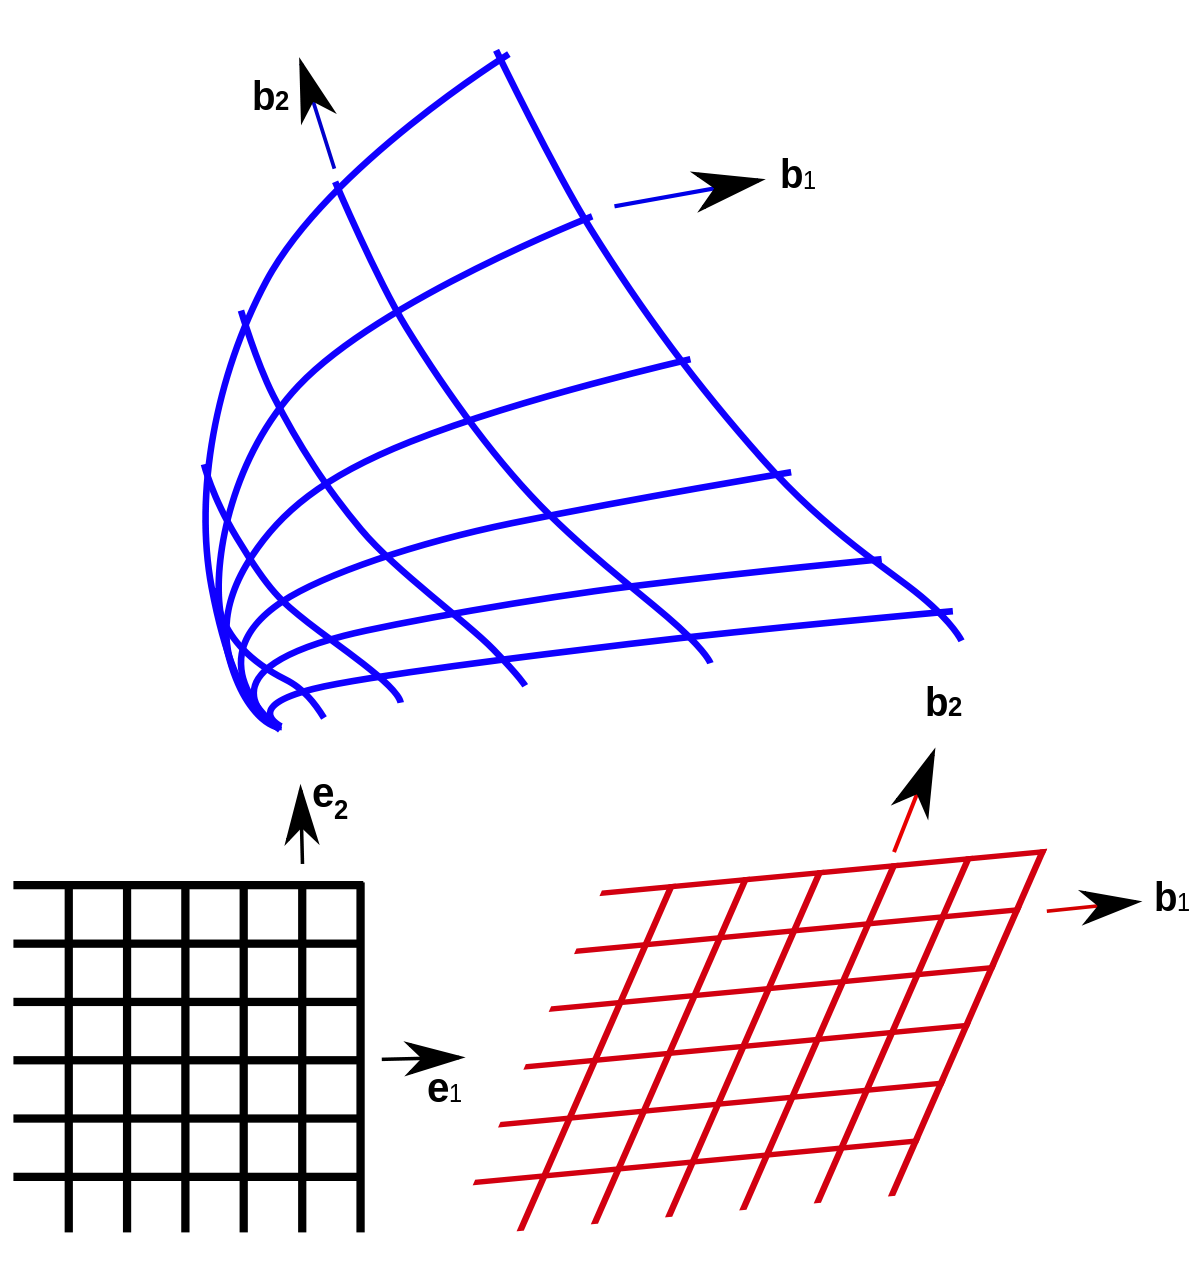 curvilinear coordinates